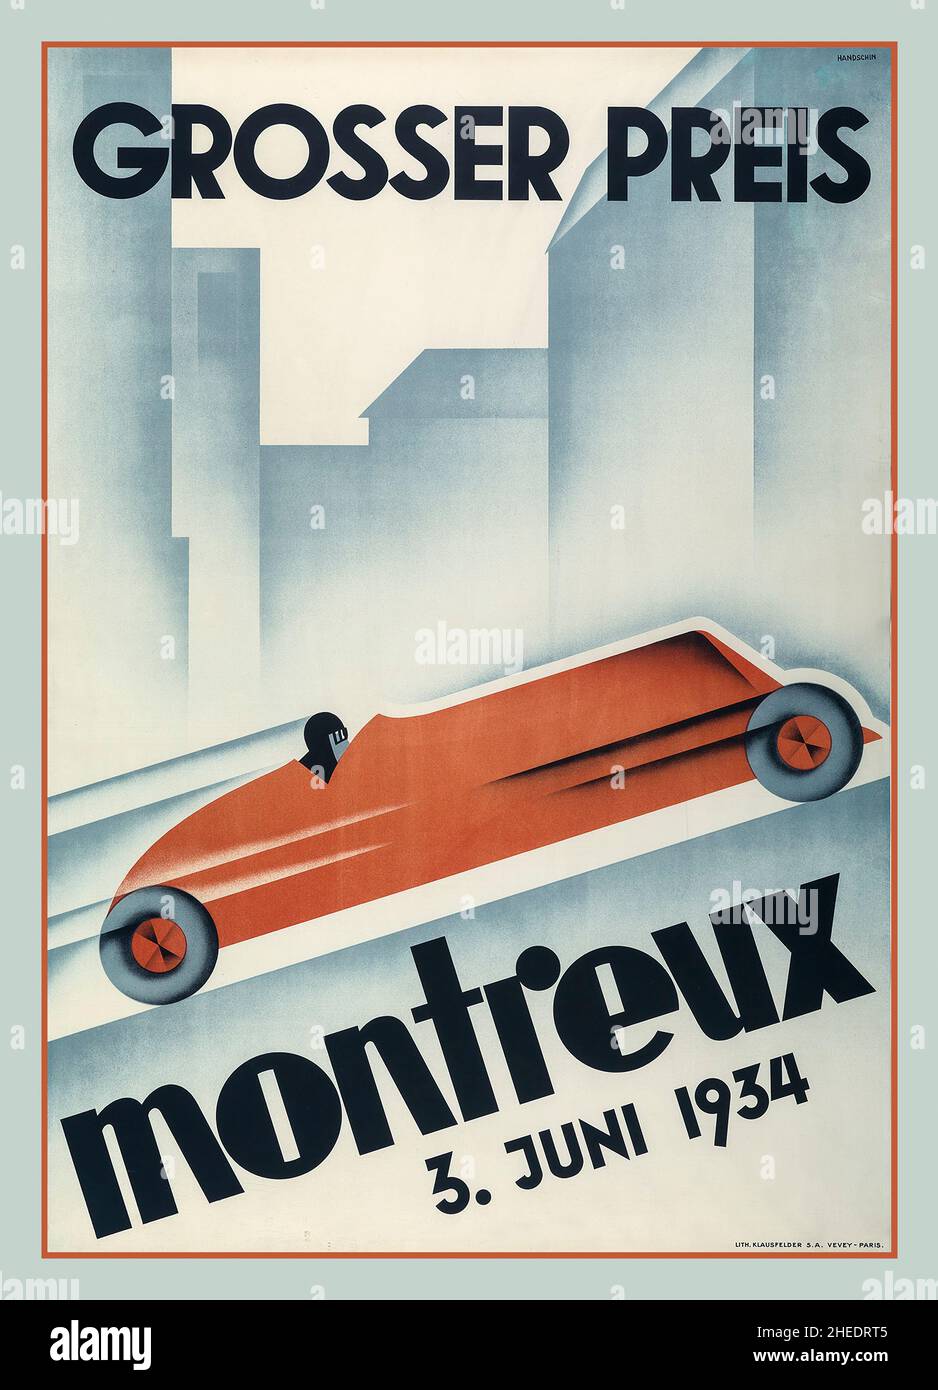 1934 Svizzera Montreux Grand Prix Racing Poster Antique 1934 Racing poster promozione della gara automobilistica Montreux Grand Prix in Svizzera. La gara si è svolta cinque volte tra il 1924 e il 1937. Foto Stock